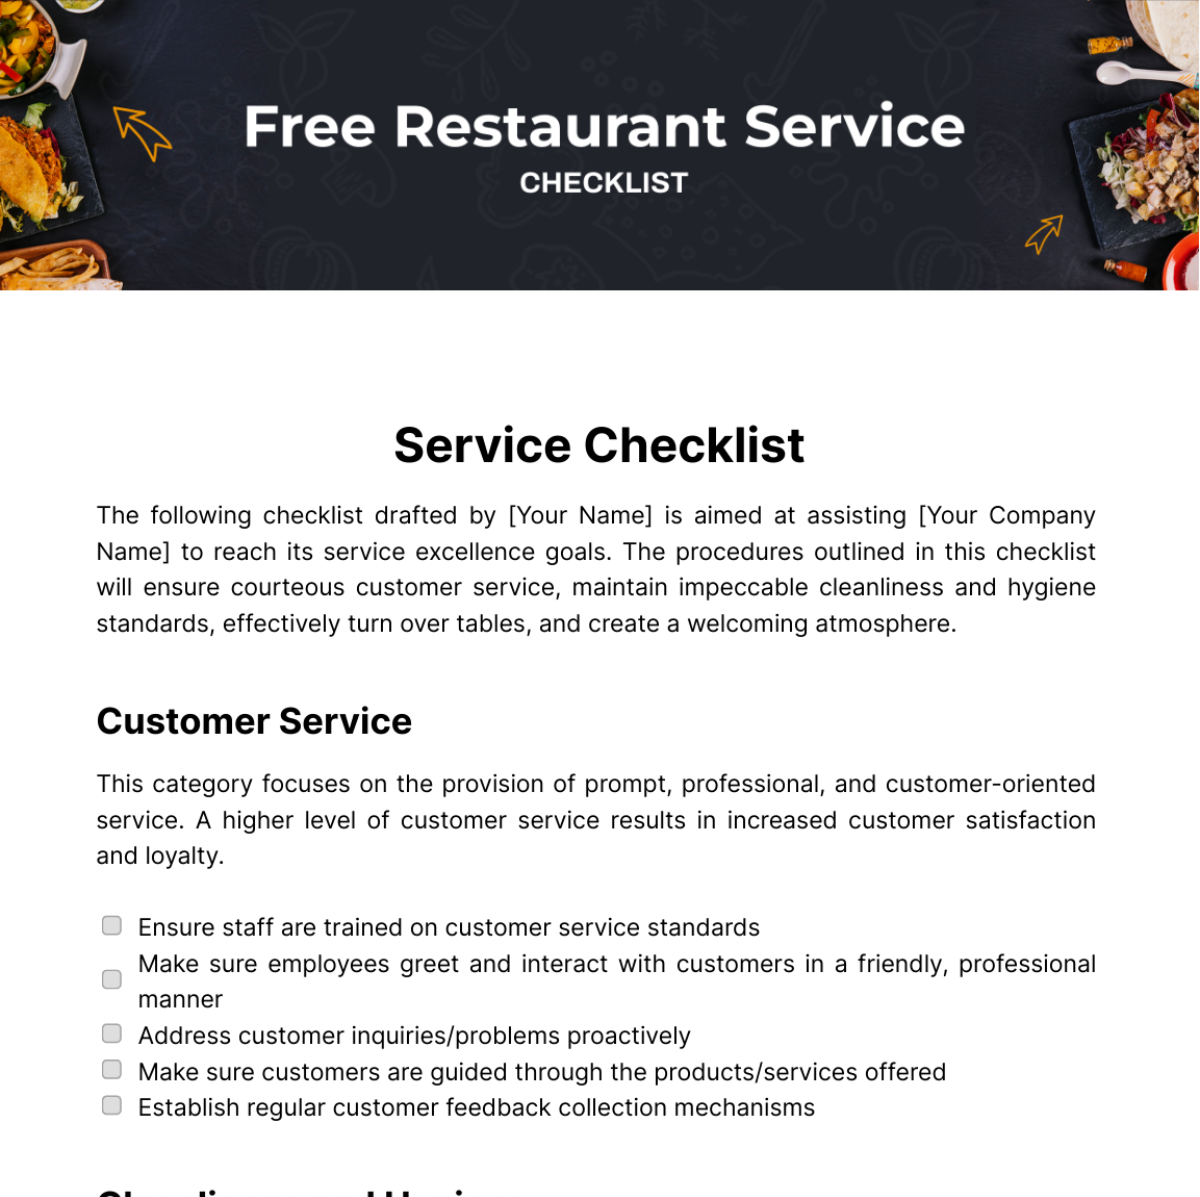 Free Restaurant Service Checklist Template